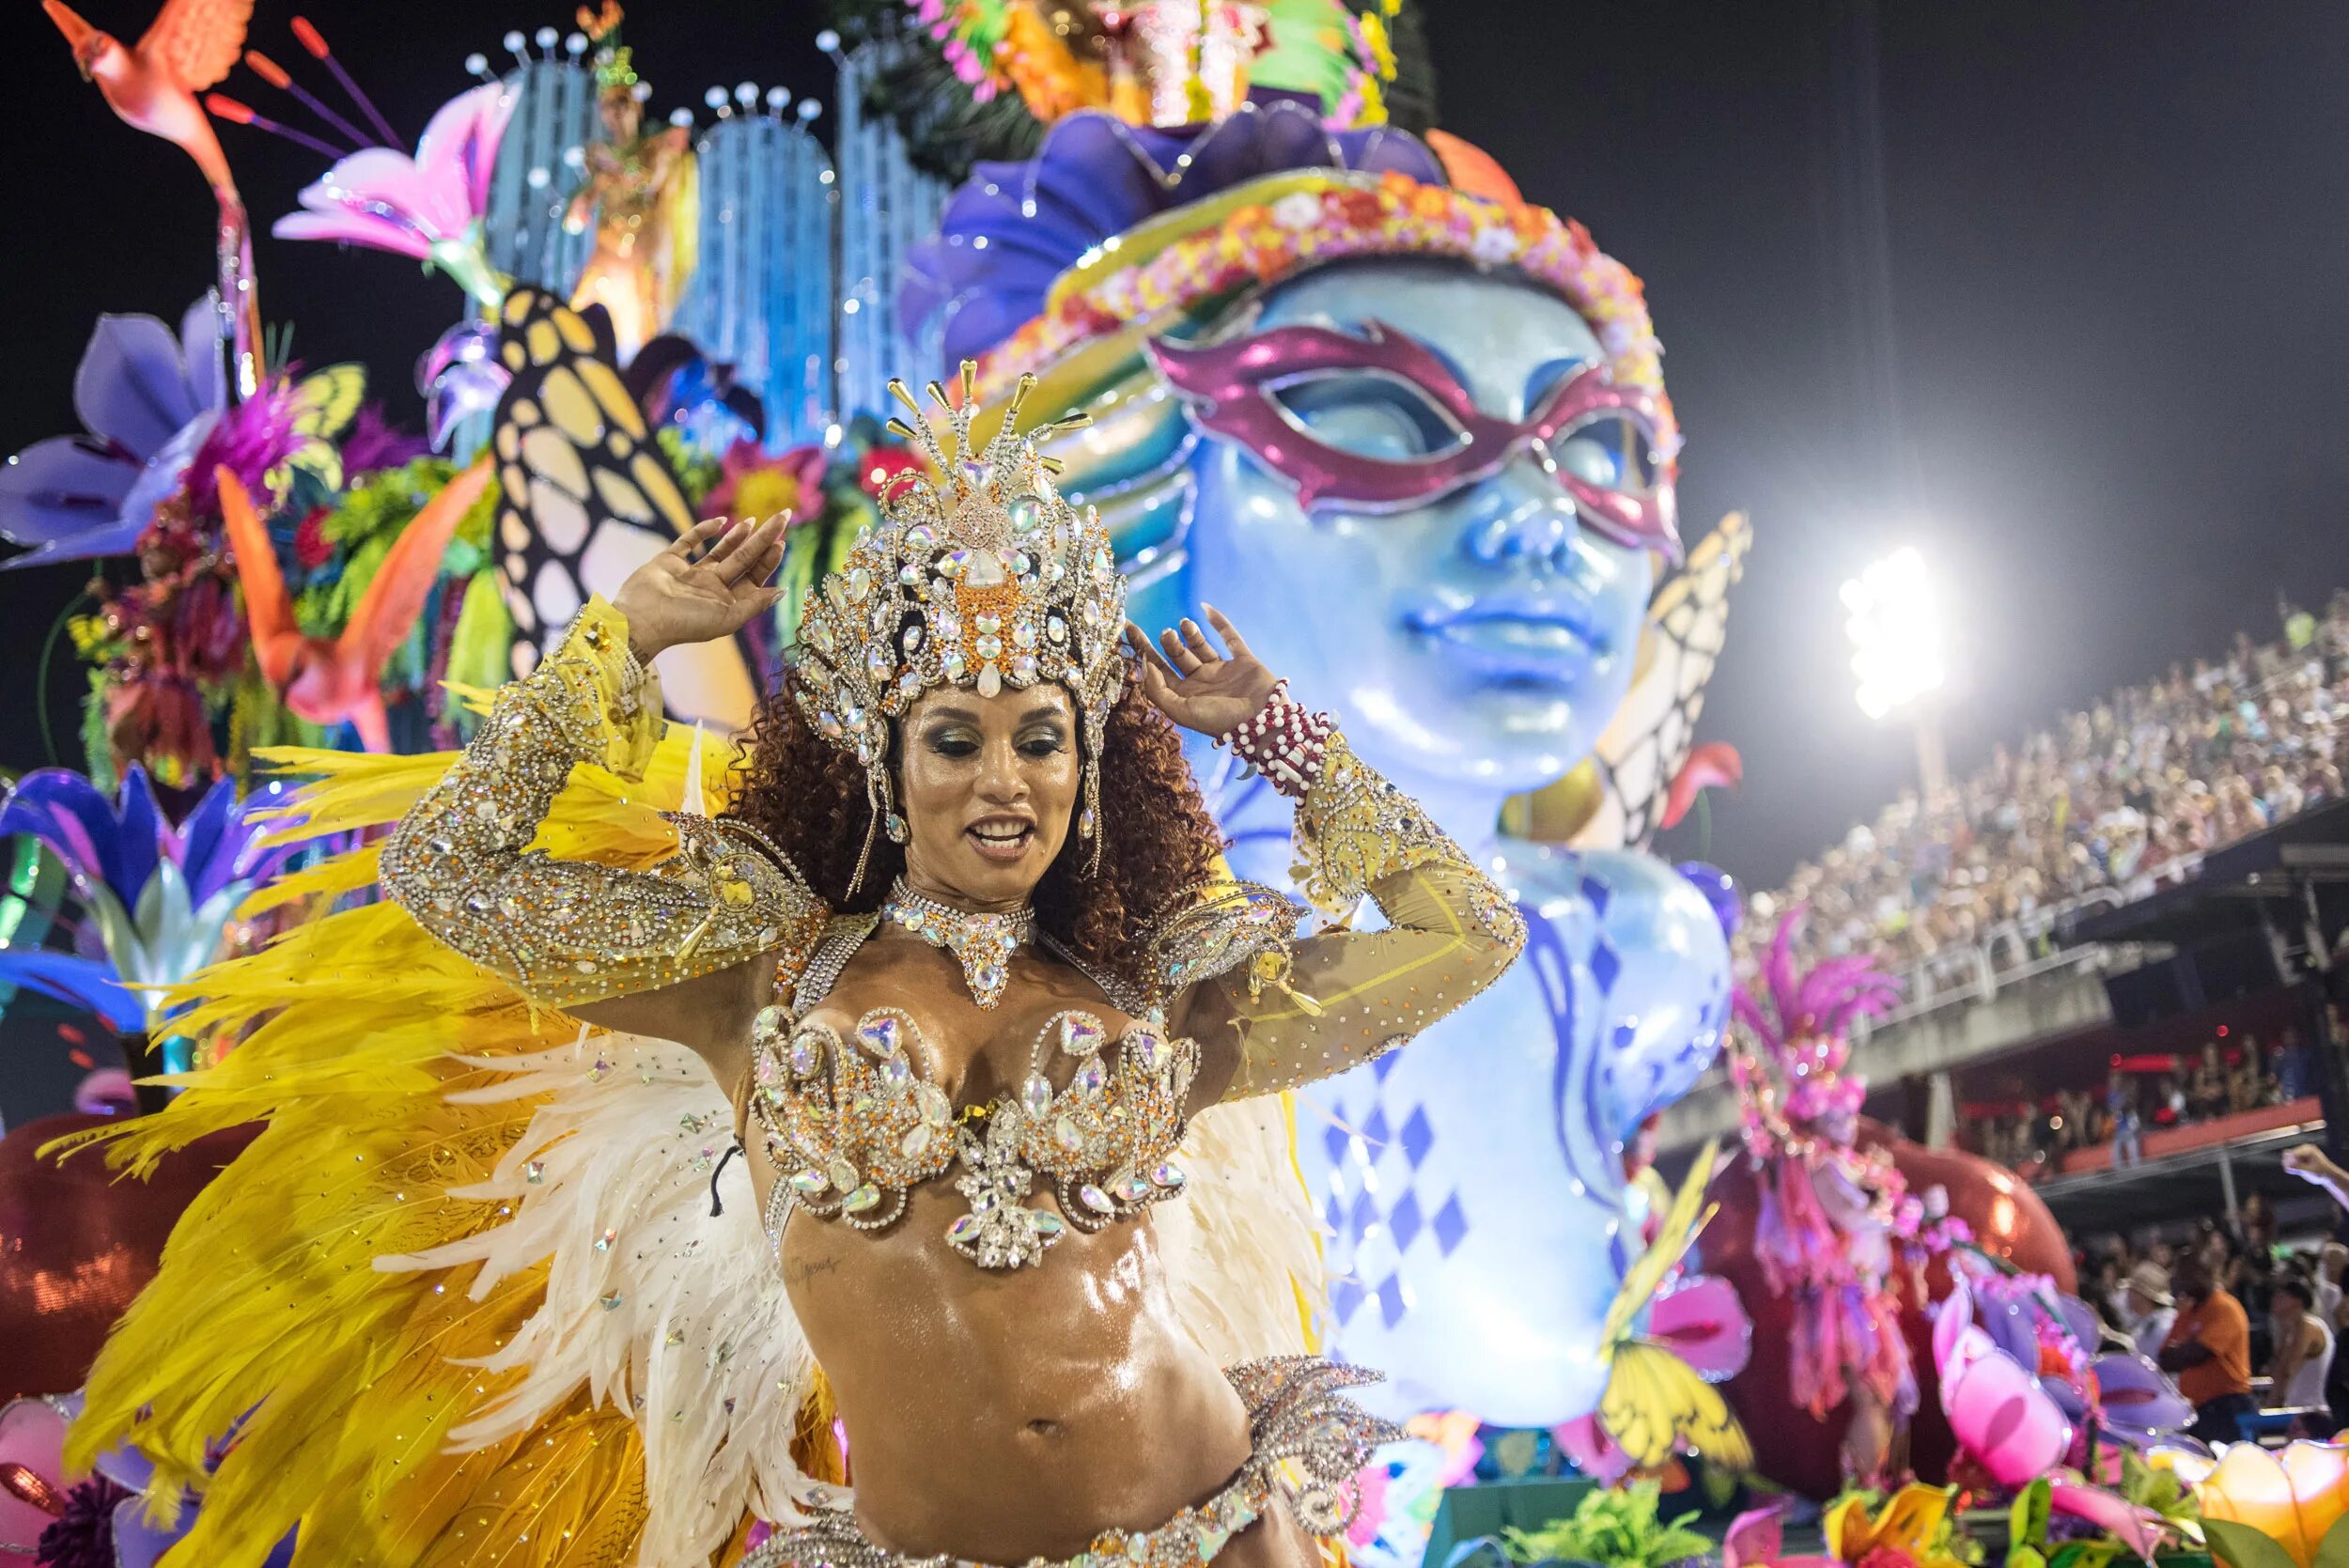 Бразильские фонки 1 час. Карнавал в Рио-де-Жанейро. Карнавал в Рио-де-Жанейро (бразильский карнавал). Фестиваль в Рио де Жанейро. Бразильский фестиваль в Рио де Жанейро.